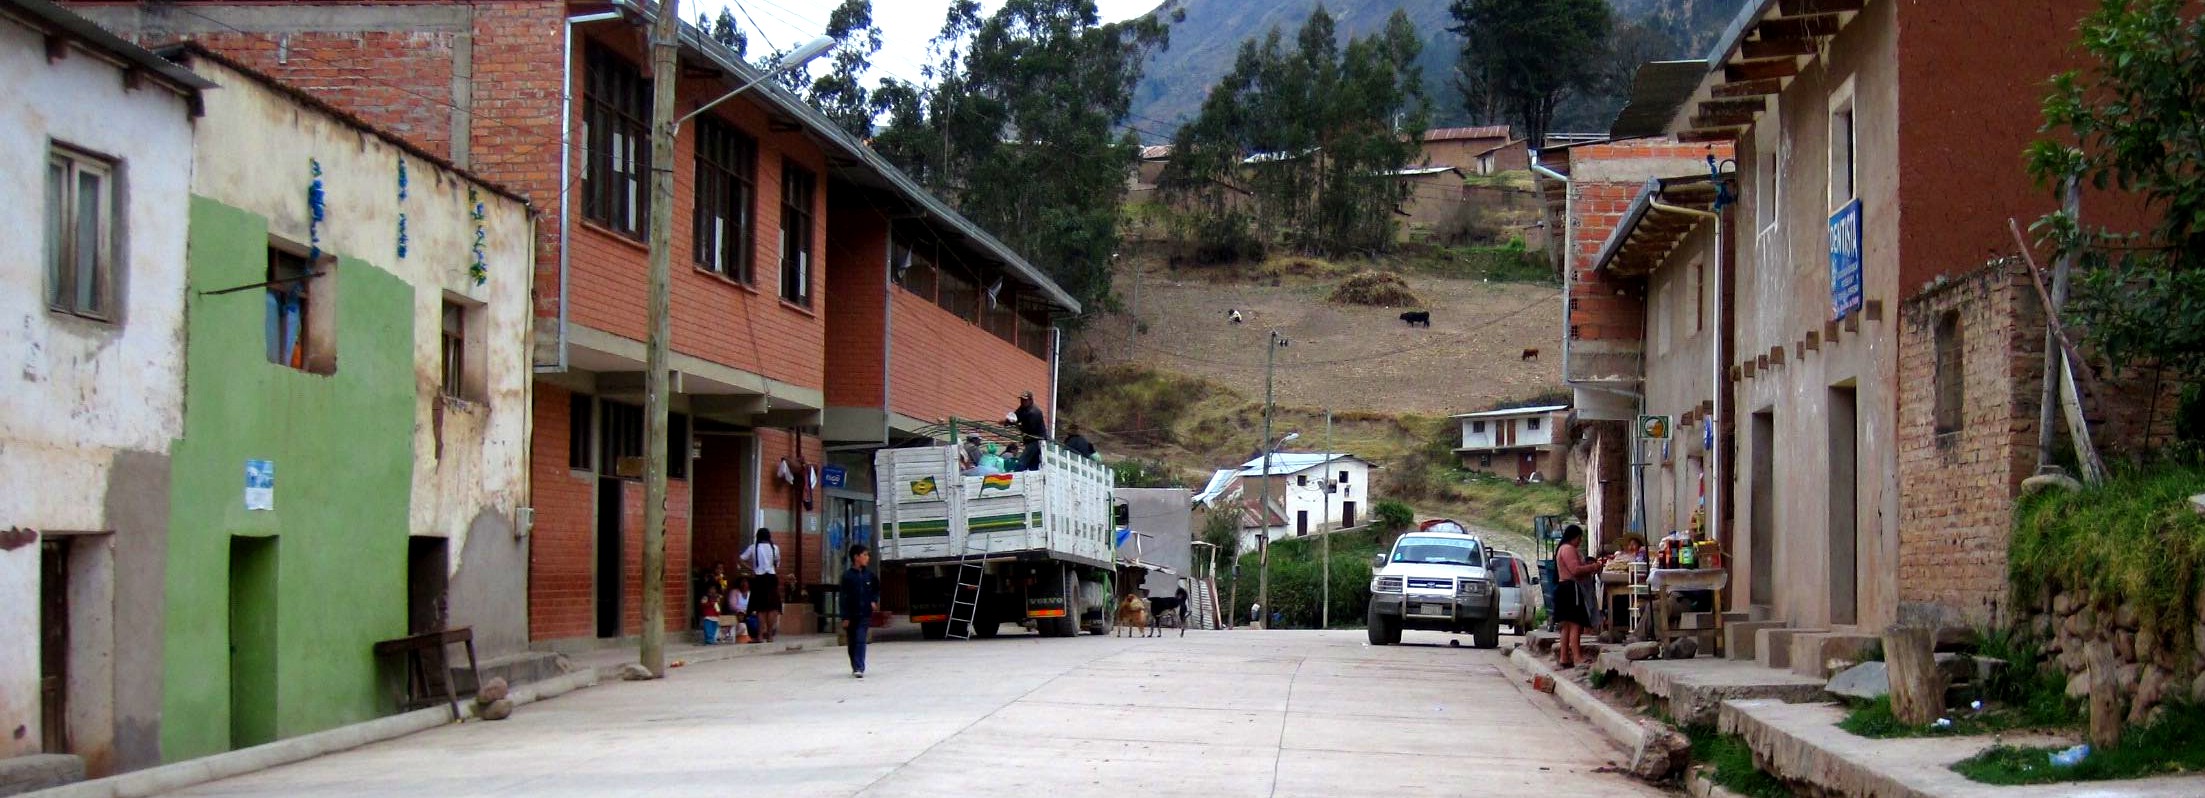 Travesía Coroico - Cochabamba, entrada a Morochata.